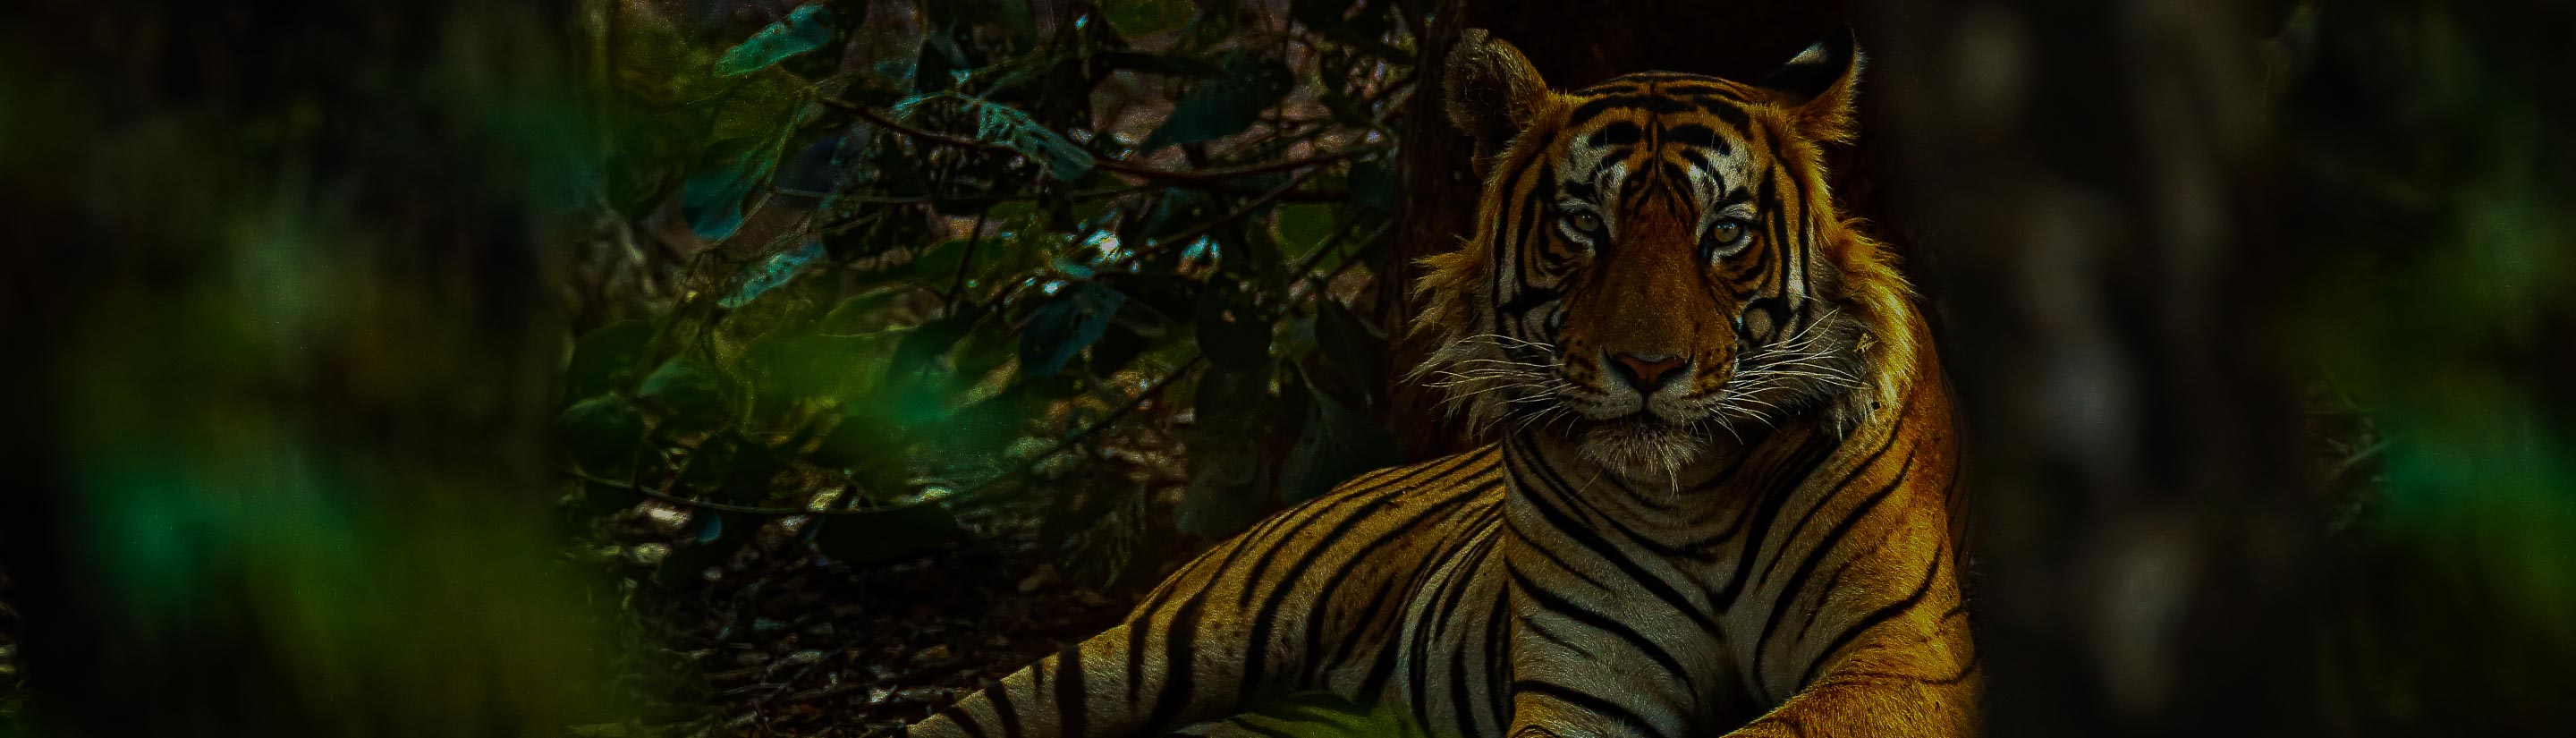 Indischer Tiger im Grünen im Ranthambore Nationalpark in Indien 